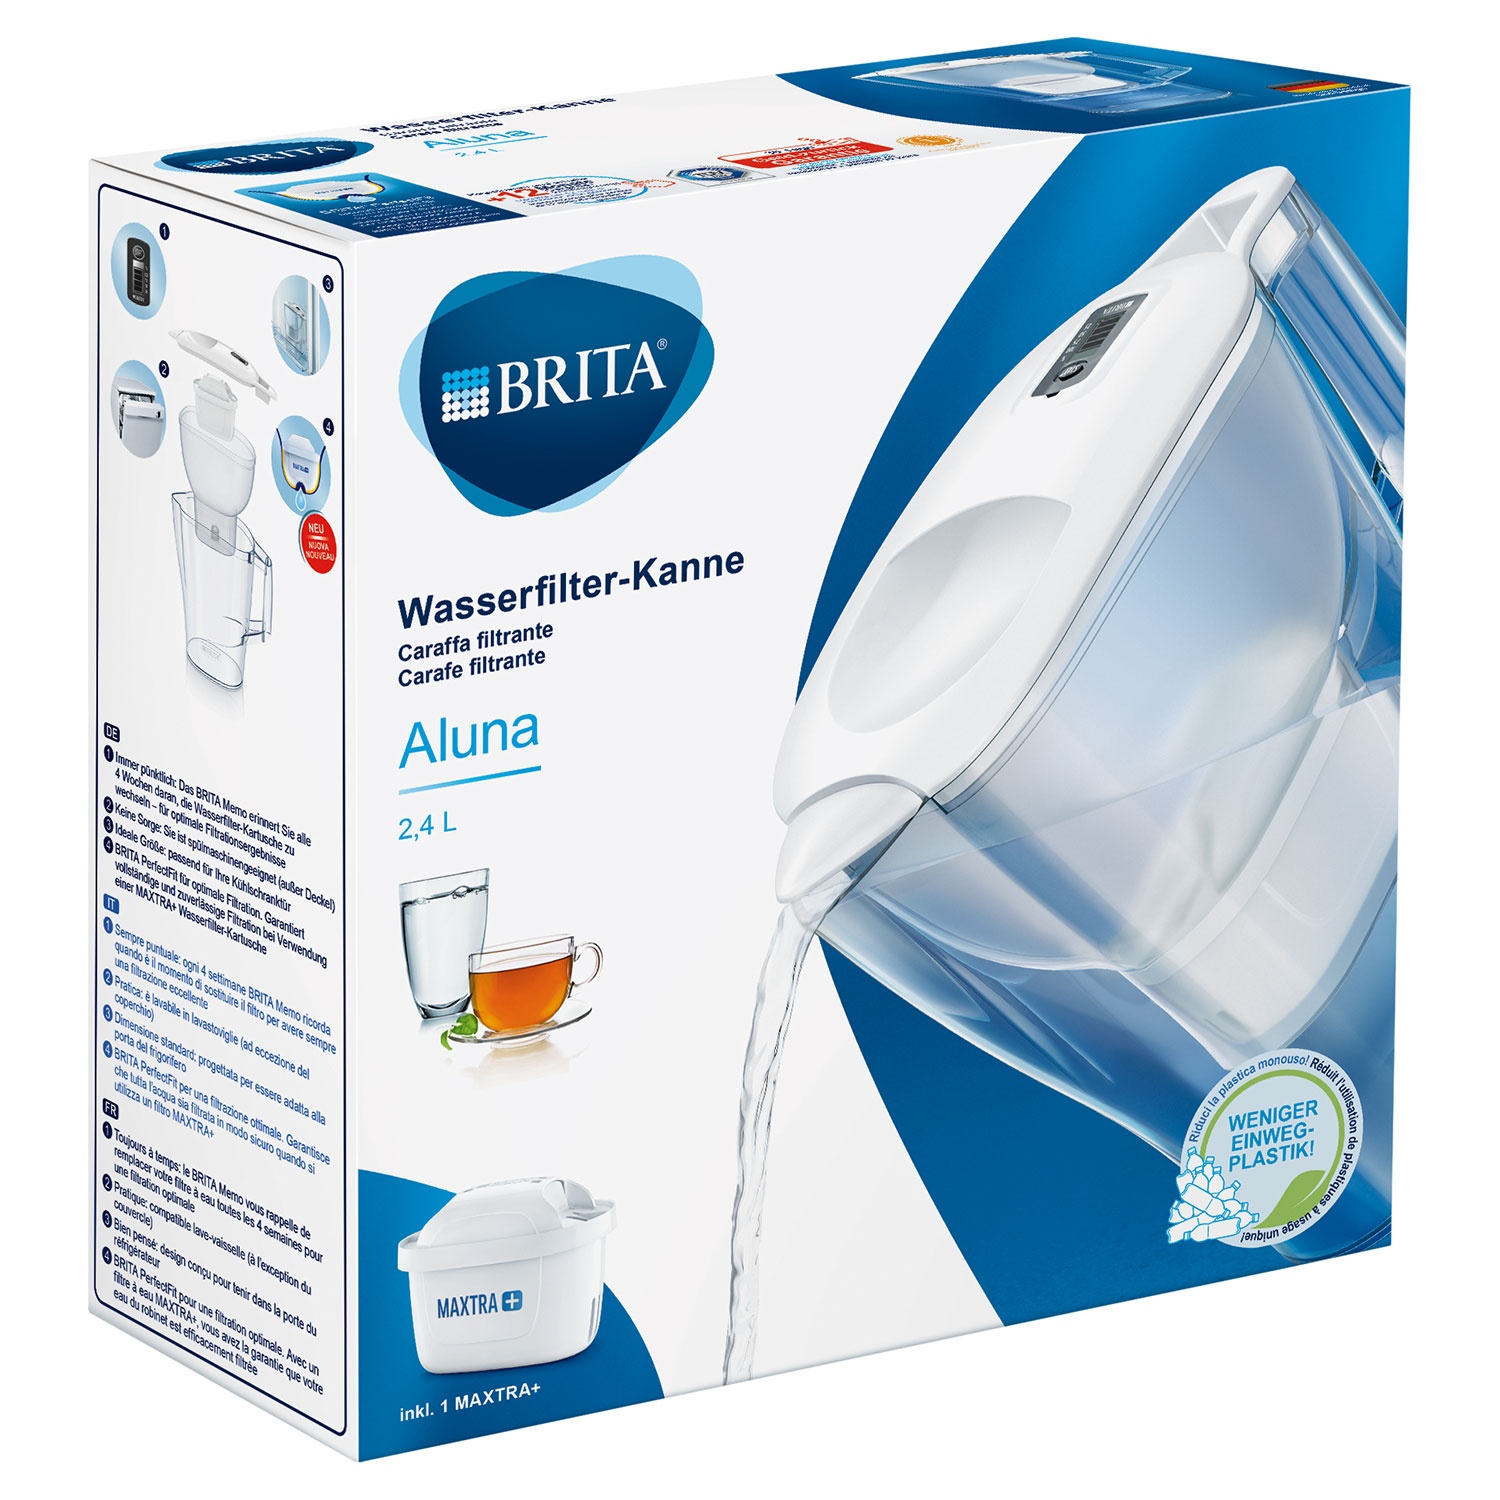 BRITA® Wasserfilter-Kanne Aluna inkl. 1 MAXTRA+